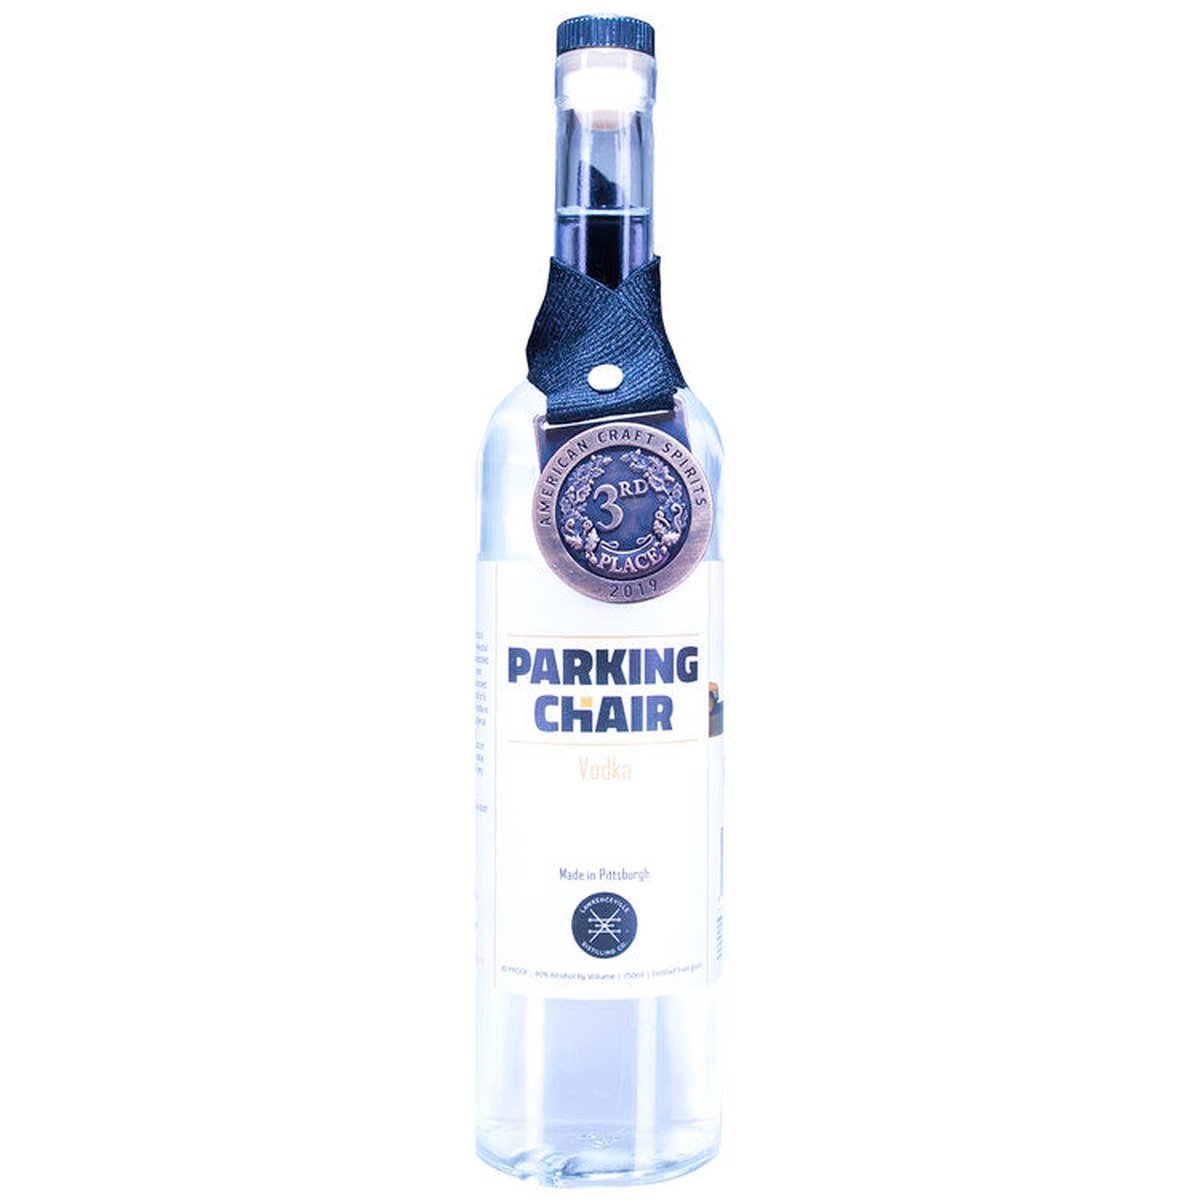 Lawrenceville Distilling - Parking Chair Vodka - 1 Liter Bottle